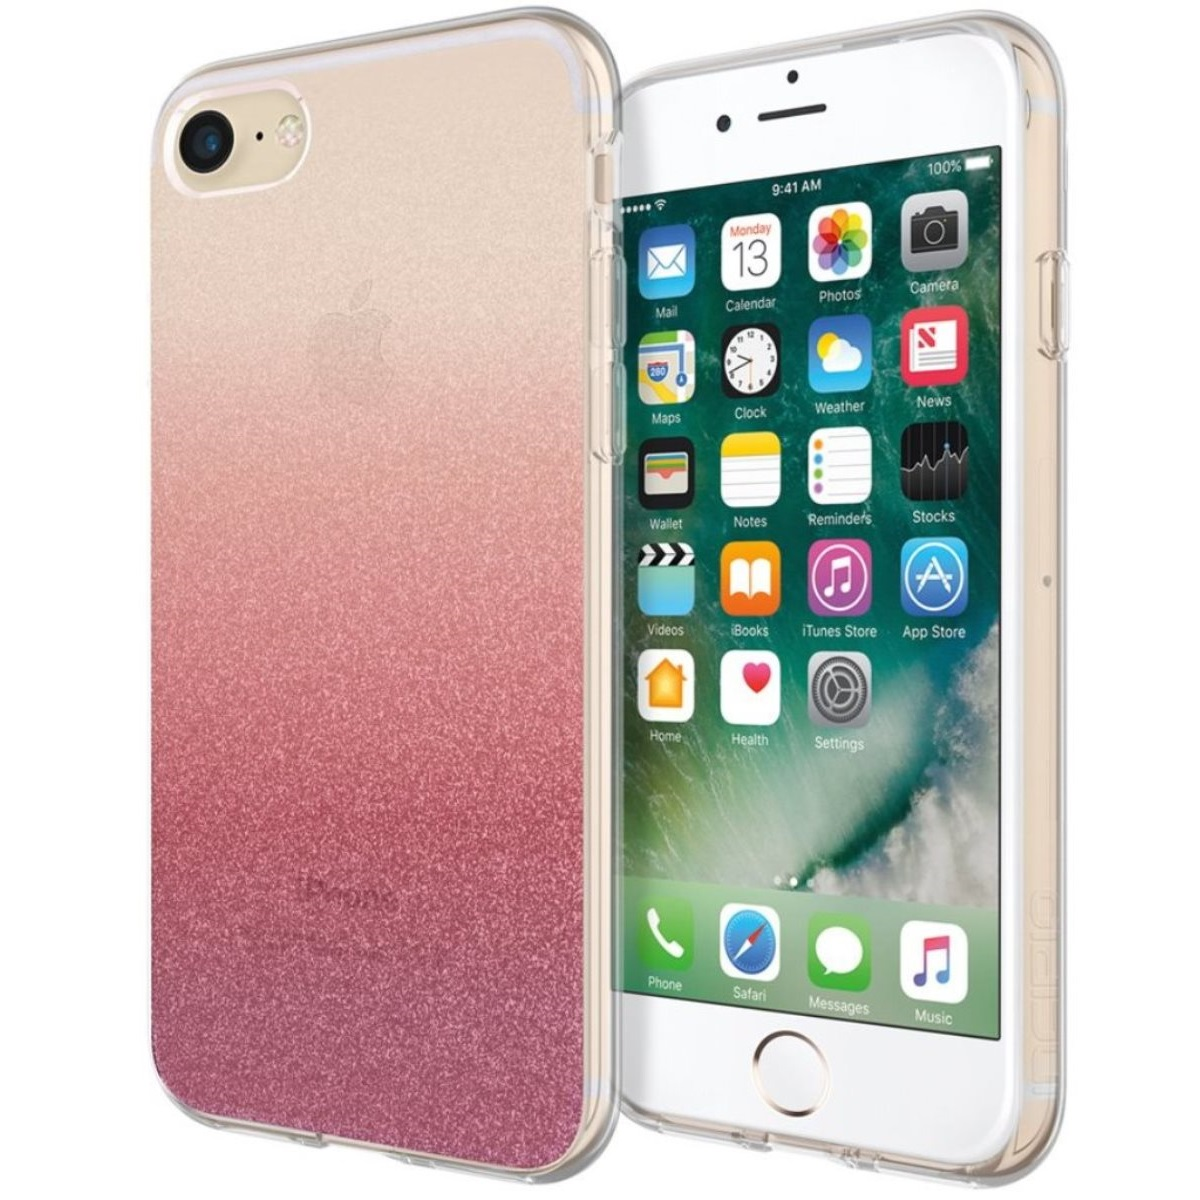 Case, Klar 8 iPhone 7 Apple, Backcover, INCIPIO 2020, iPhone SE